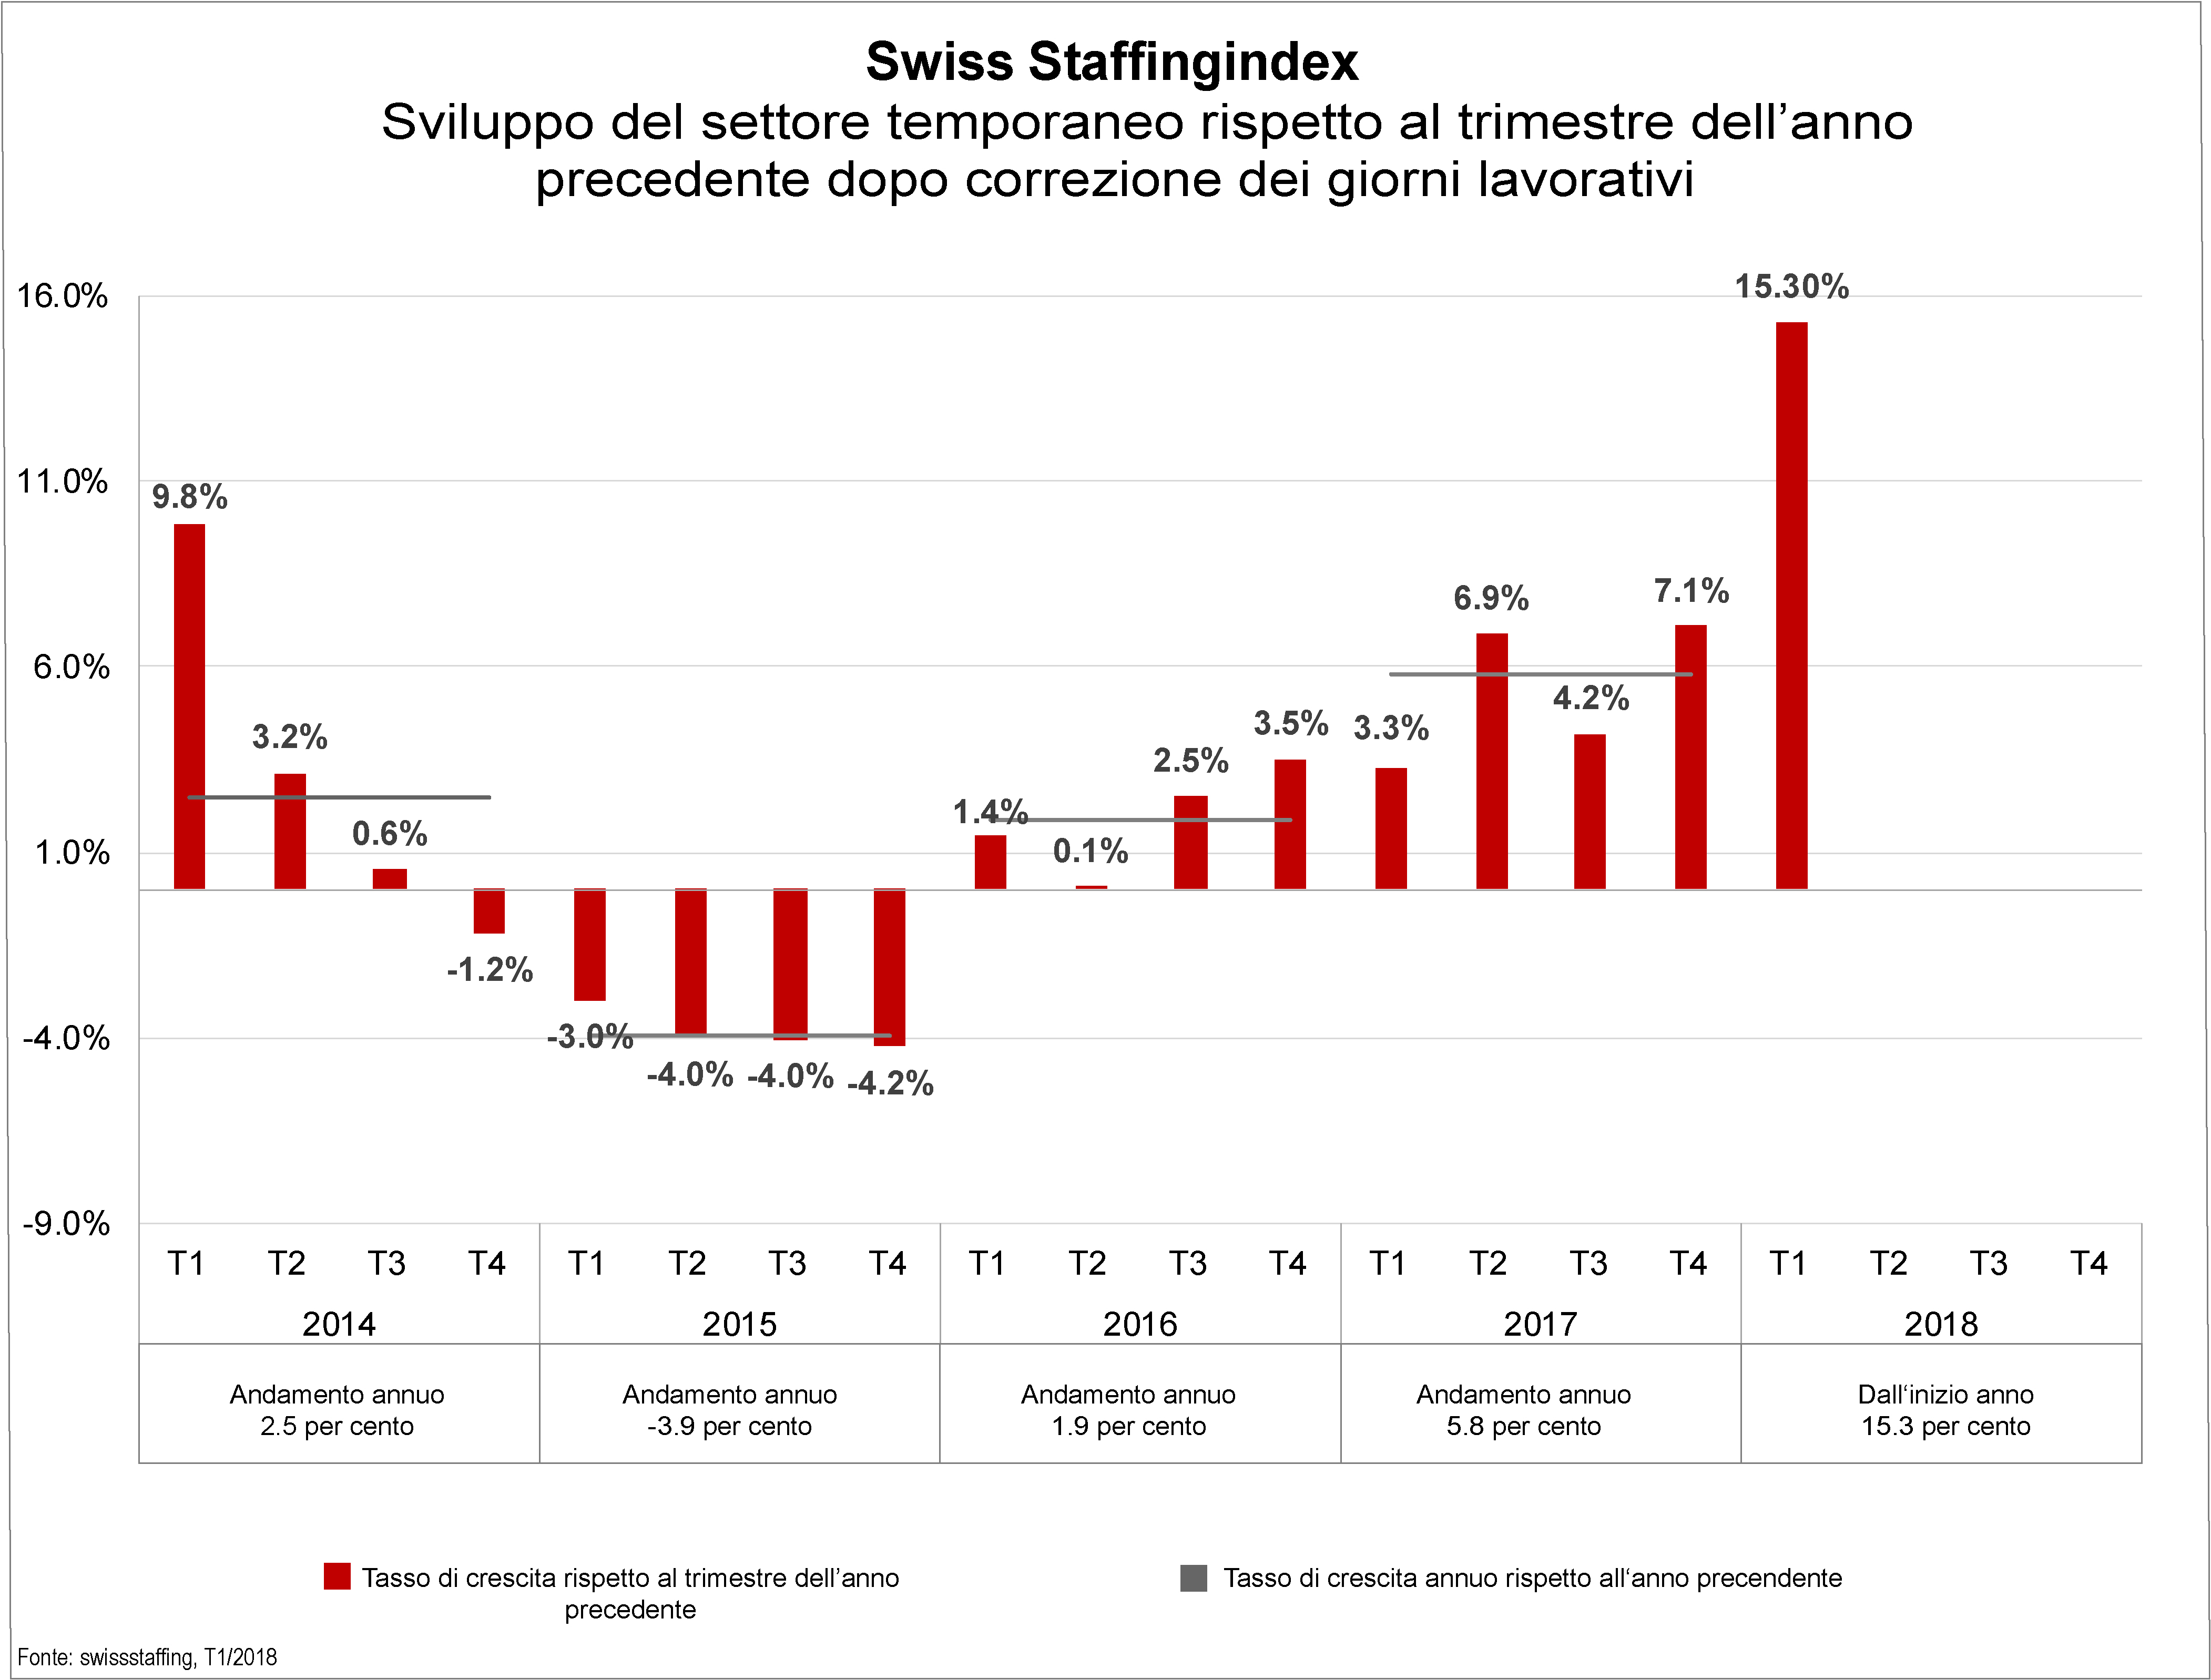 Swiss Staffingindex – Franco debole e congiuntura favorevole danno slancio al settore del lavoro temporaneo